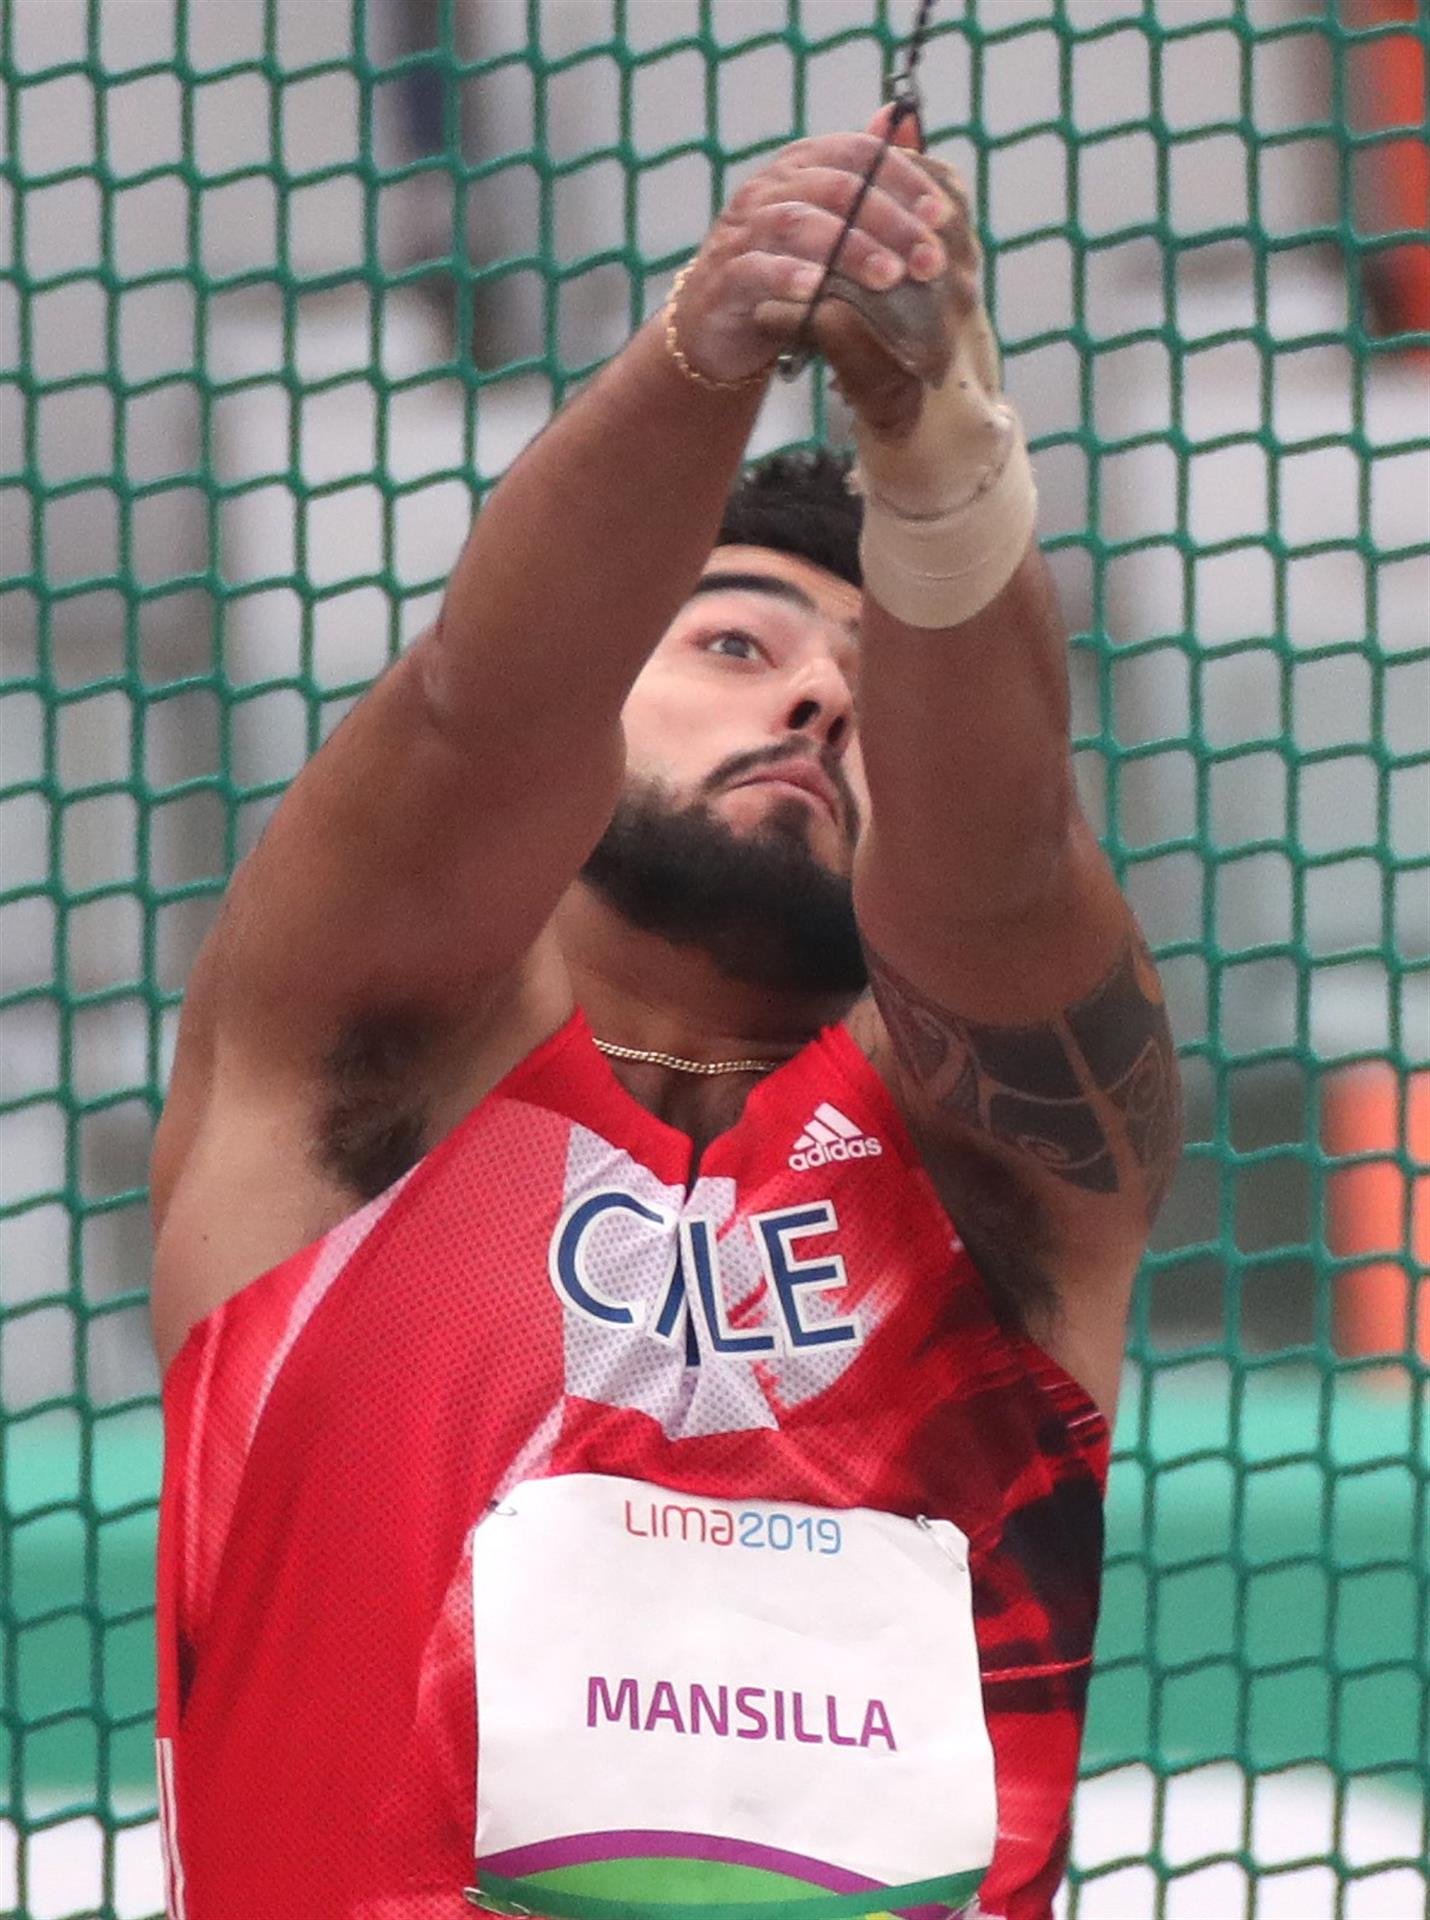 Foto de archivo del atleta chileno Humberto Mansilla. EFE/ Orlando Barría
